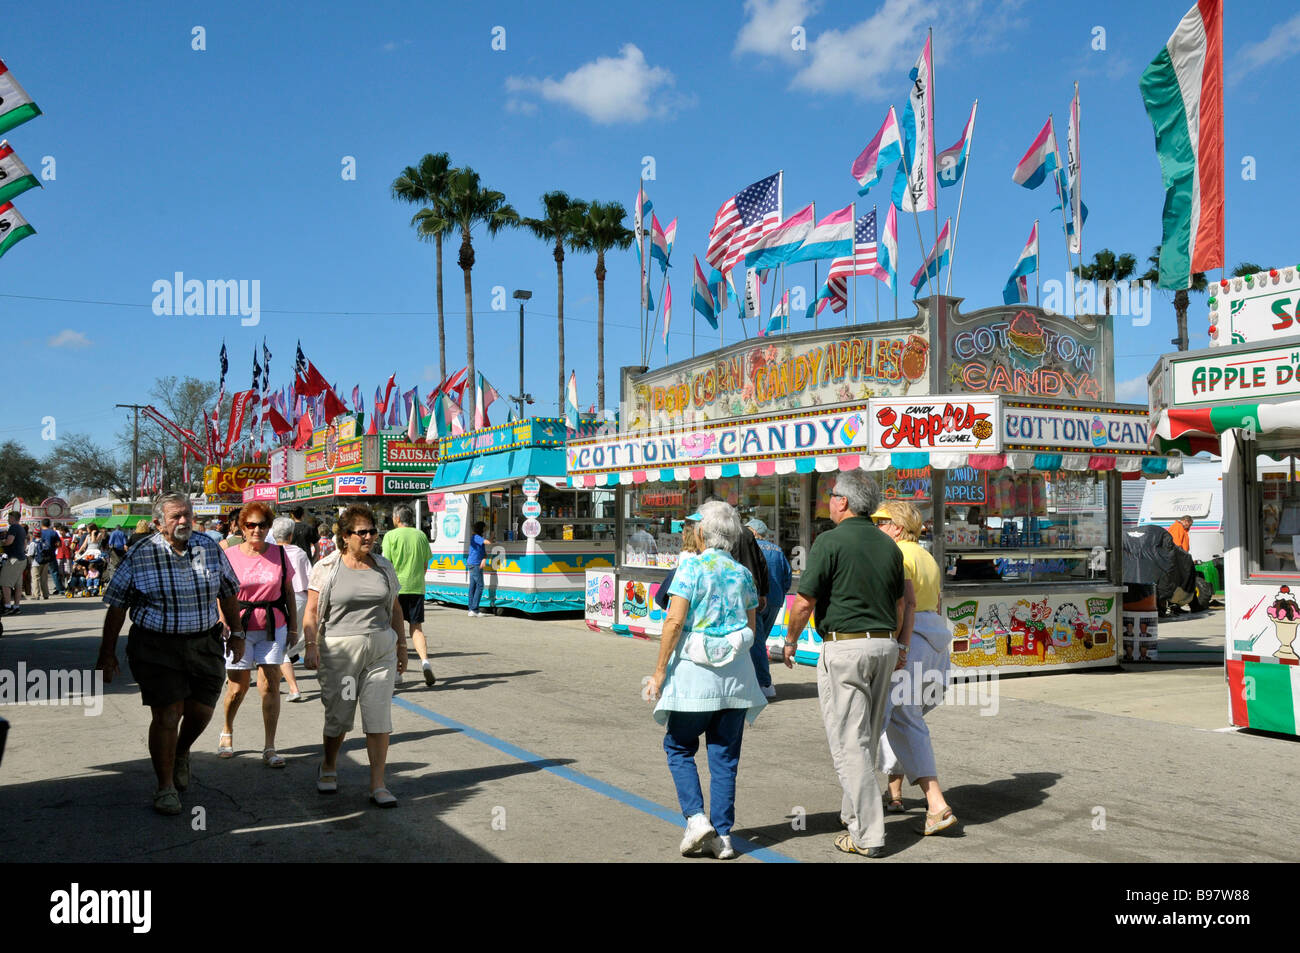 Des kiosques à l'Alimentaire Tampa Florida State Fairgrounds Banque D'Images